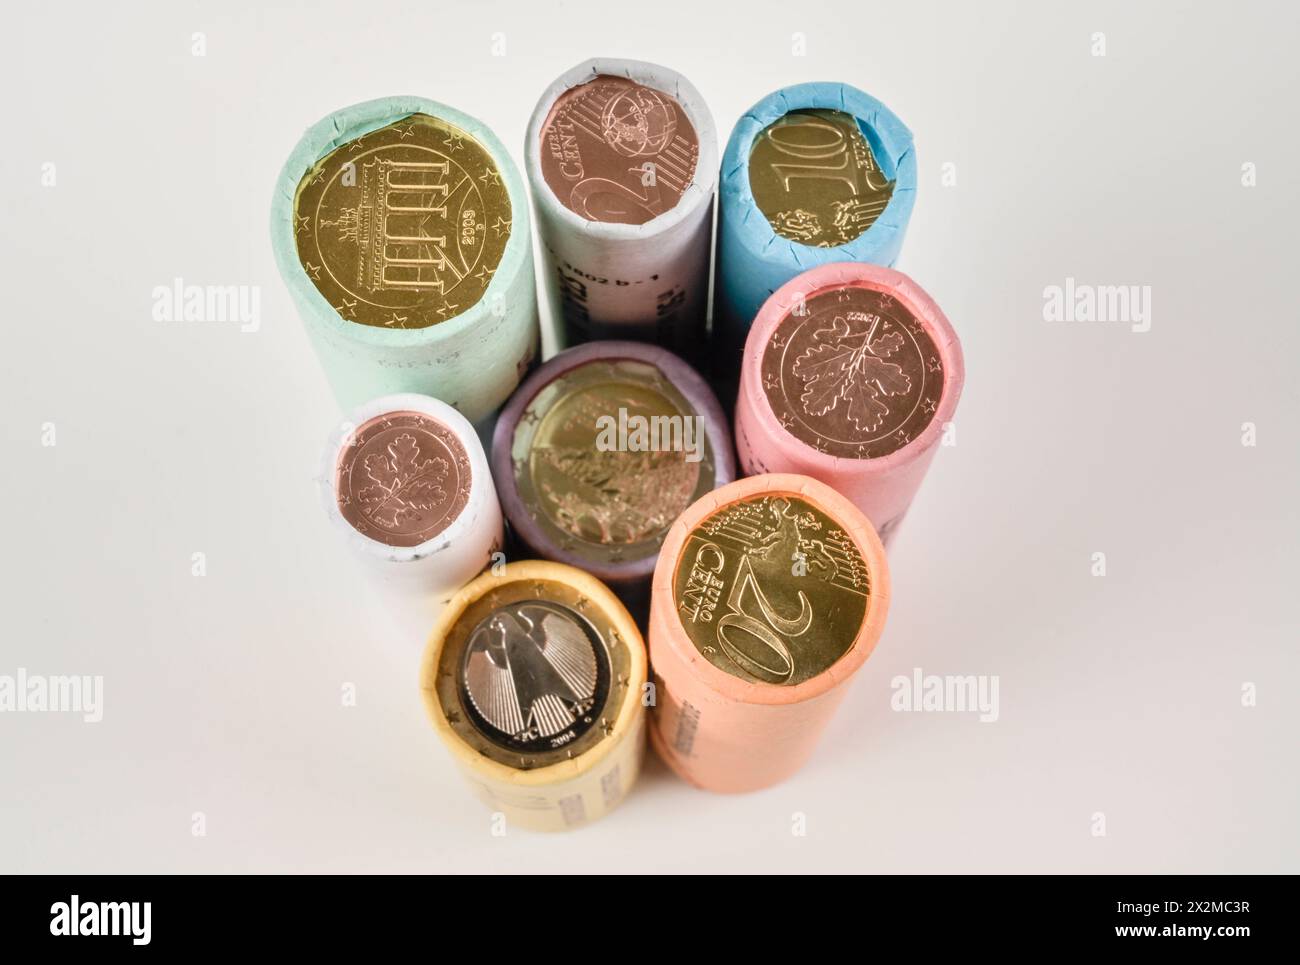 Kleingeld, Rollen, Münzen, Cent, Euro *** Small change, rolls, coins, cents, euros Stock Photo